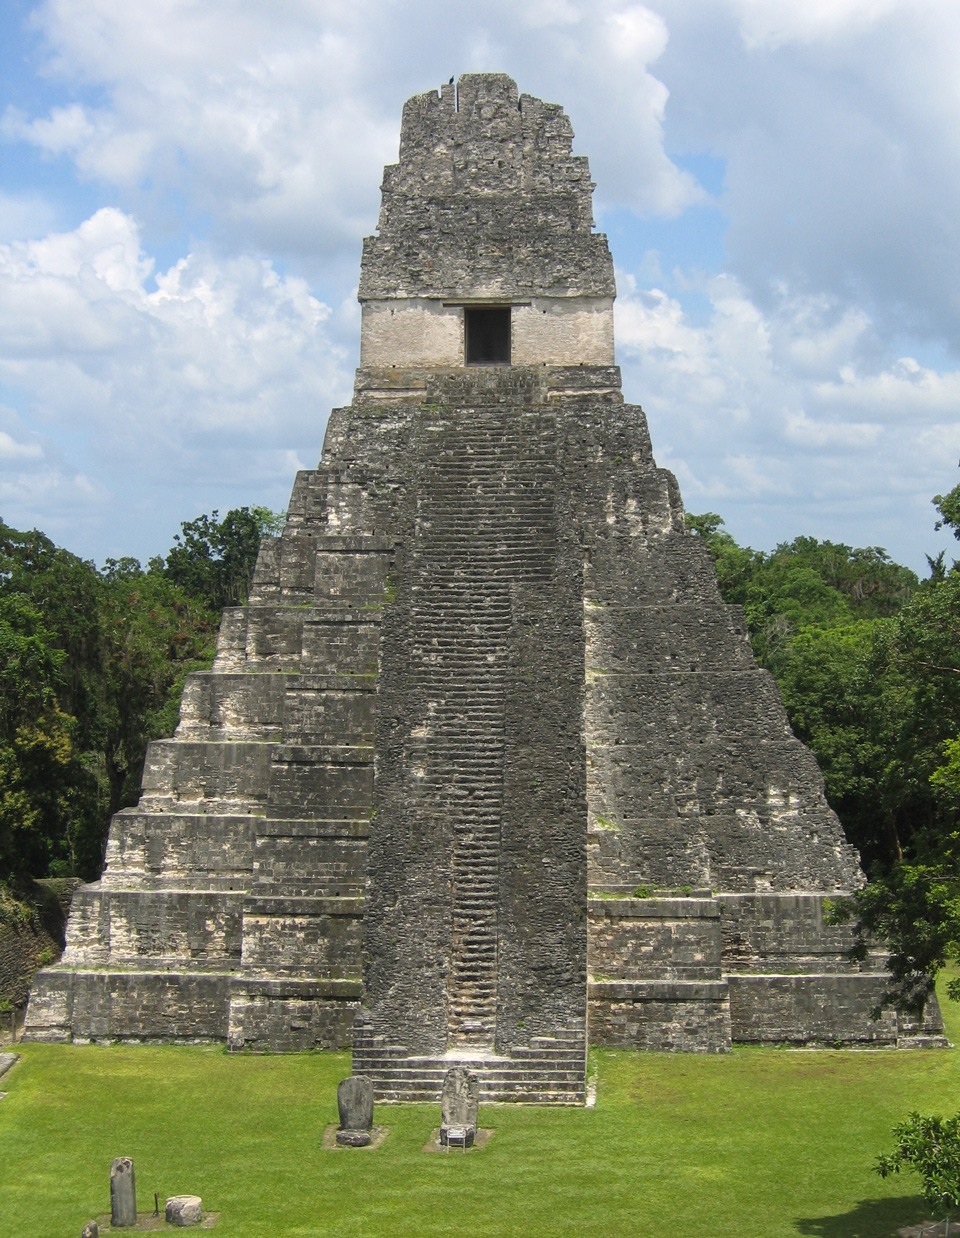 (تيكال)، مدينة قديمة من حضارة المايا يعود تاريخها لـ800 سنة قبل الميلاد إلى 900 بعدها.